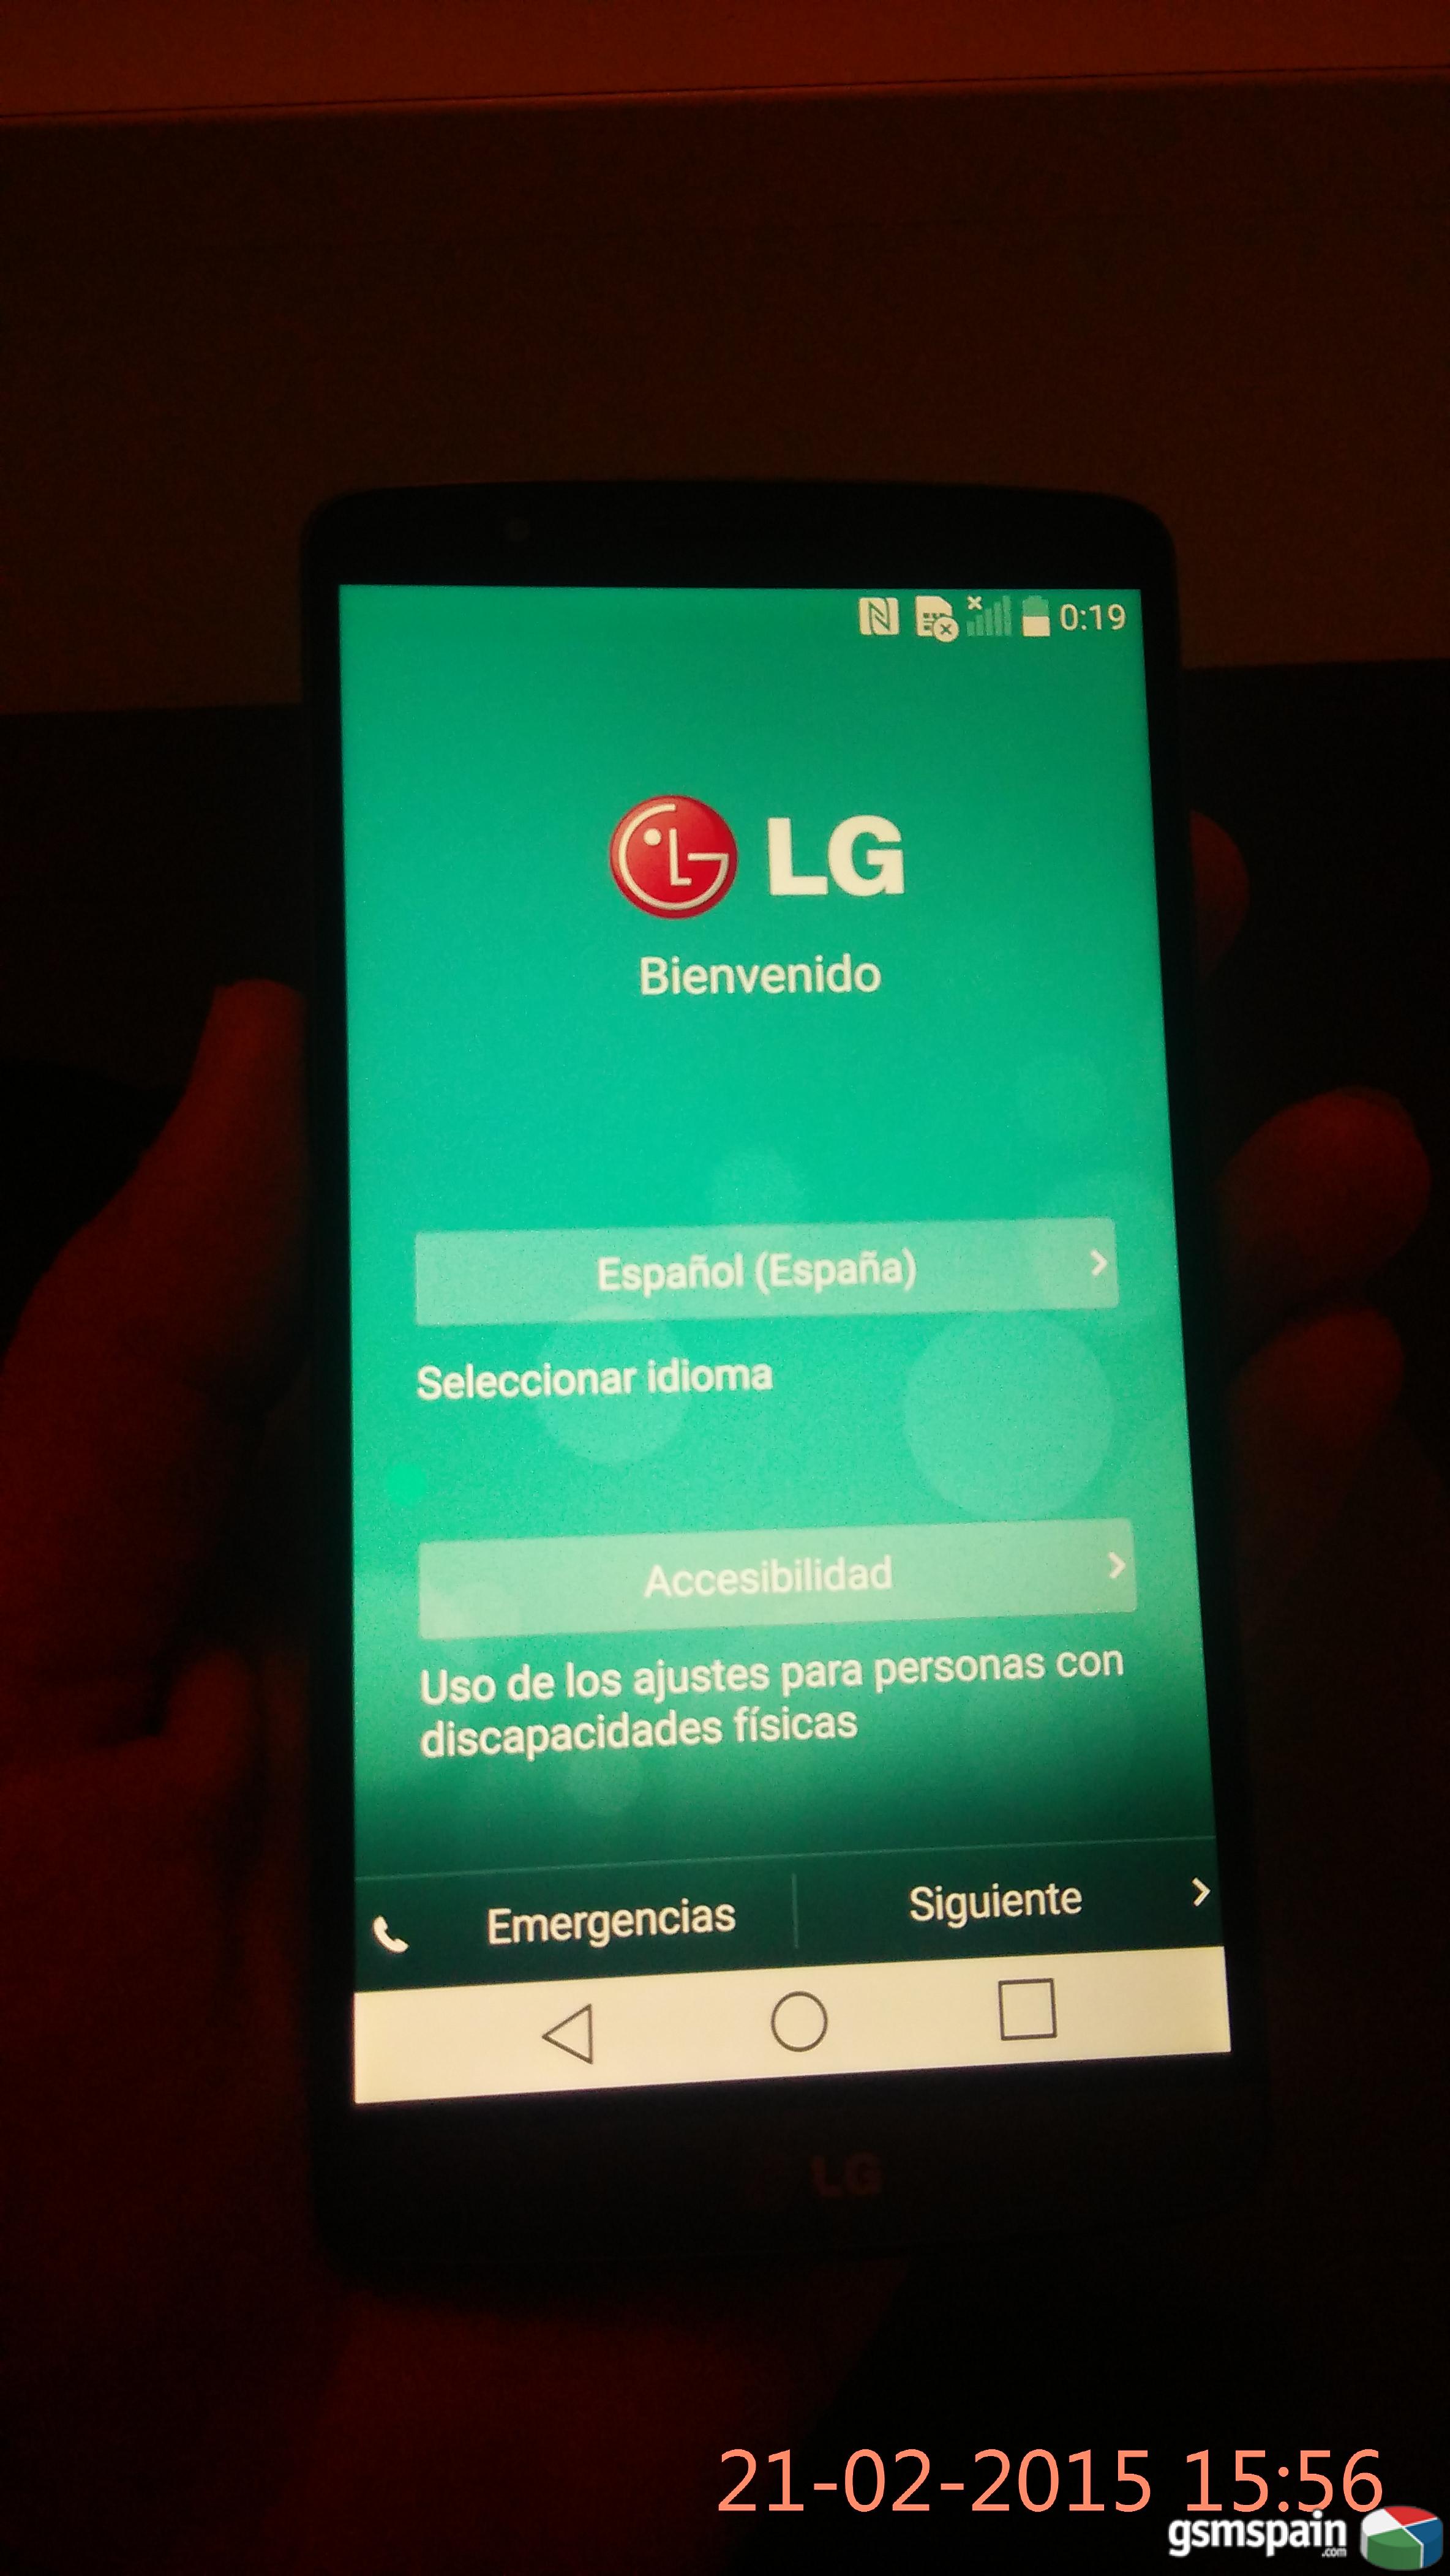 [VENDO] LG G3 TITAN 16GB libre como nuevo,Factura el corte ingles + funda  255 euros